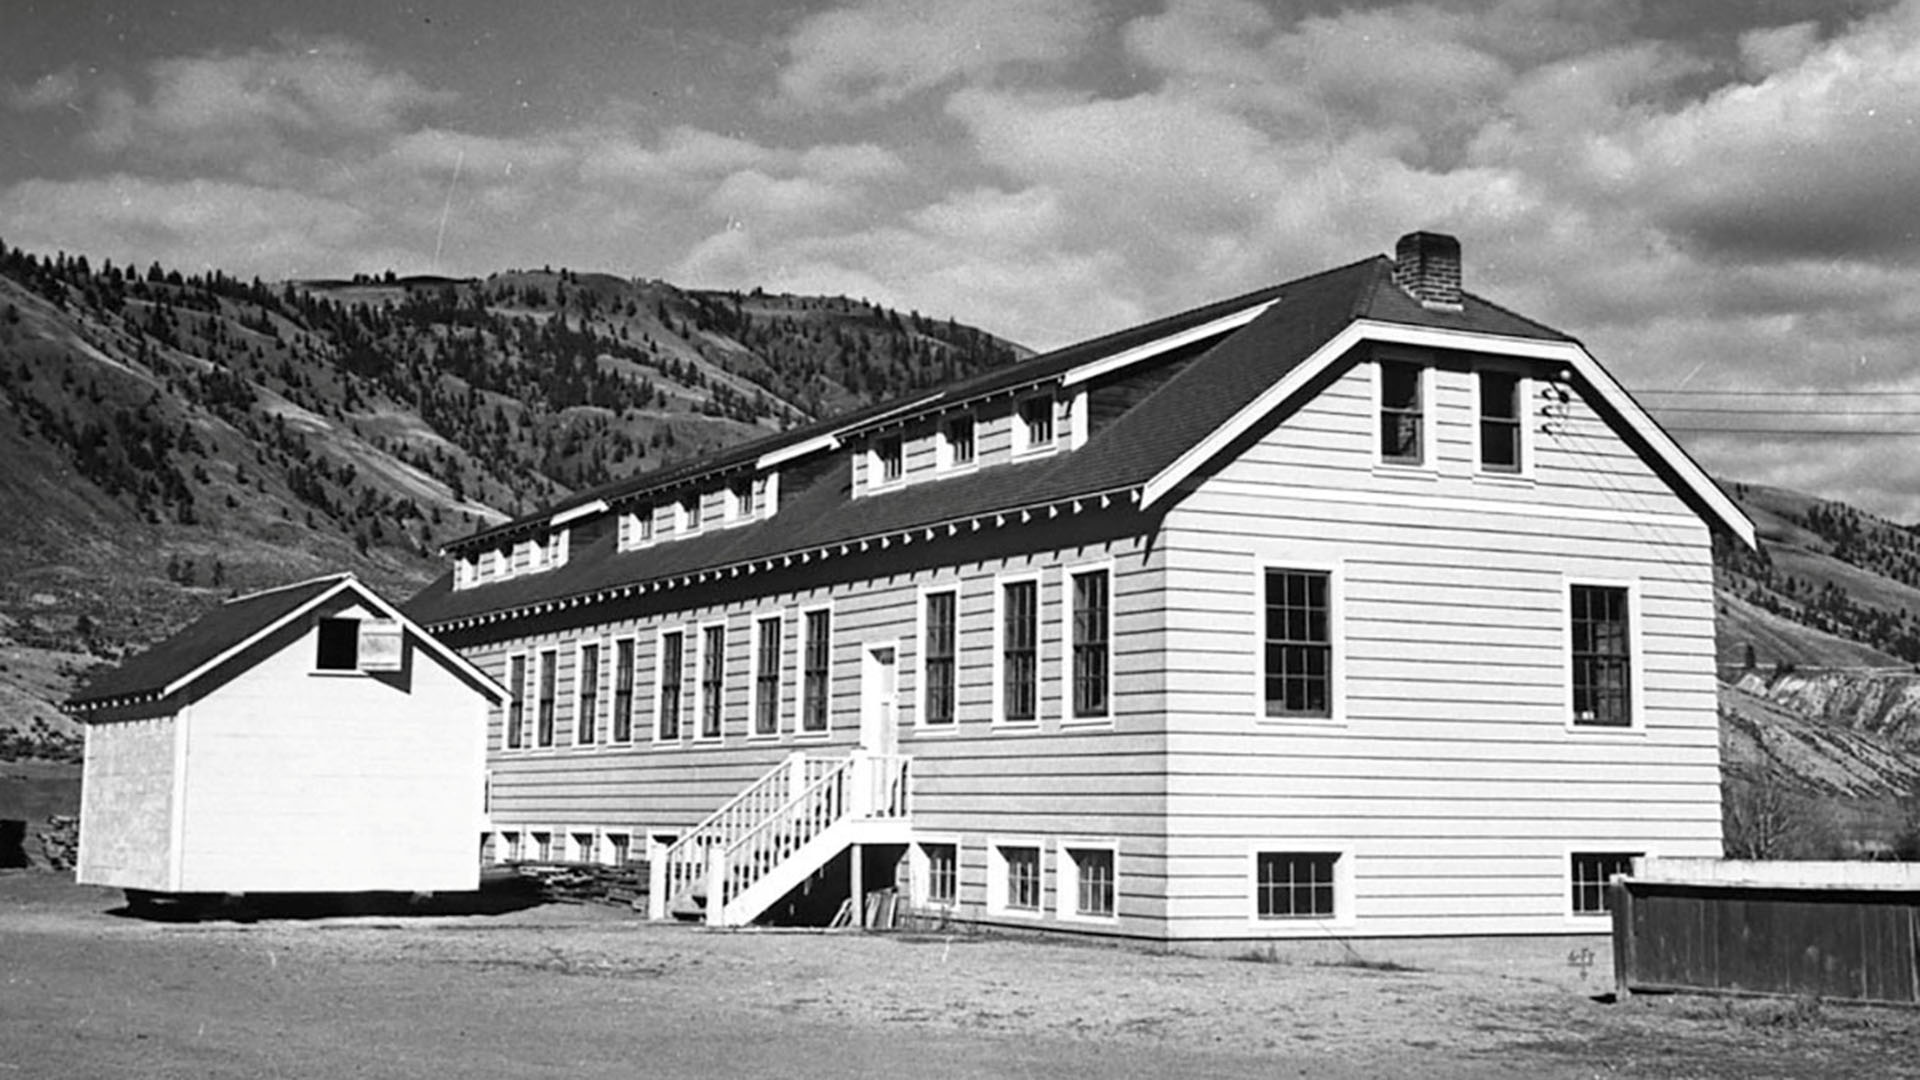 Un nuevo edificio de aulas en la Escuela Residencial India de Kamloops se ve en Kamloops, Columbia Británica, Canadá, alrededor de 1950. Biblioteca y Archivos de Canadá / Folleto
